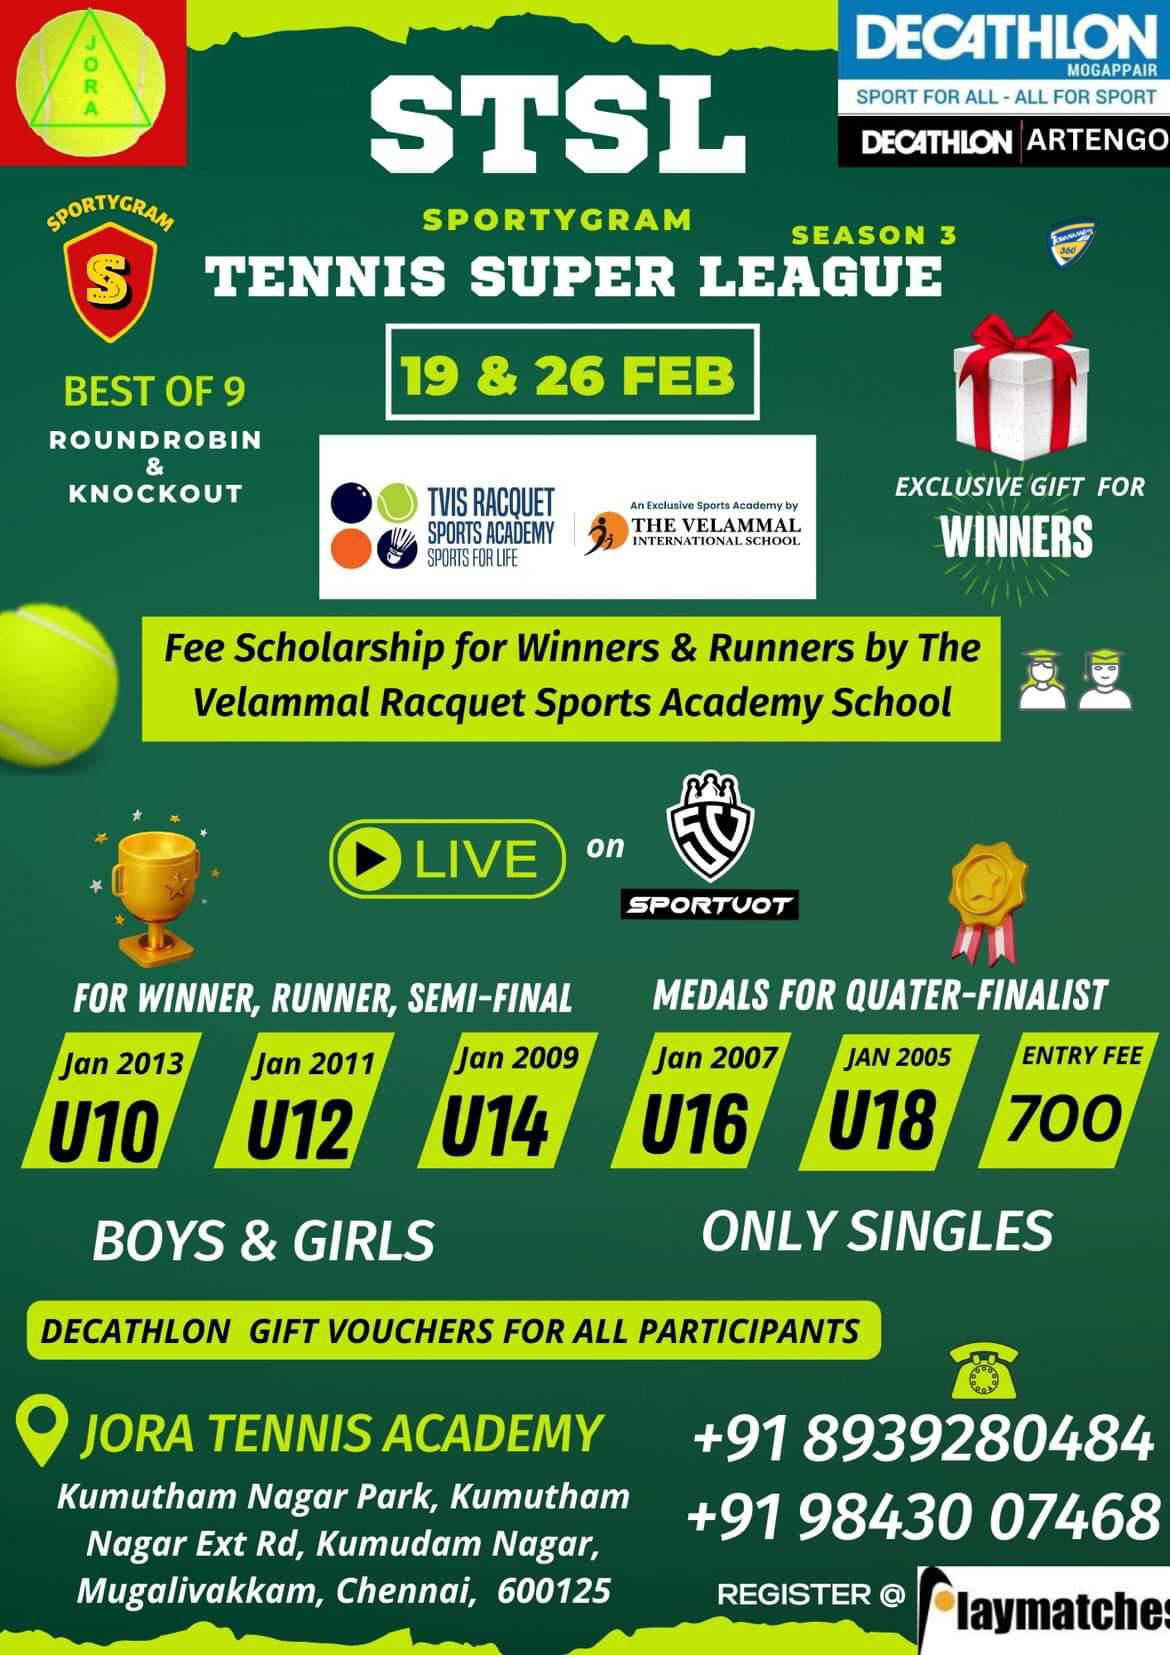 Sportygram Tennis Super League Season 3